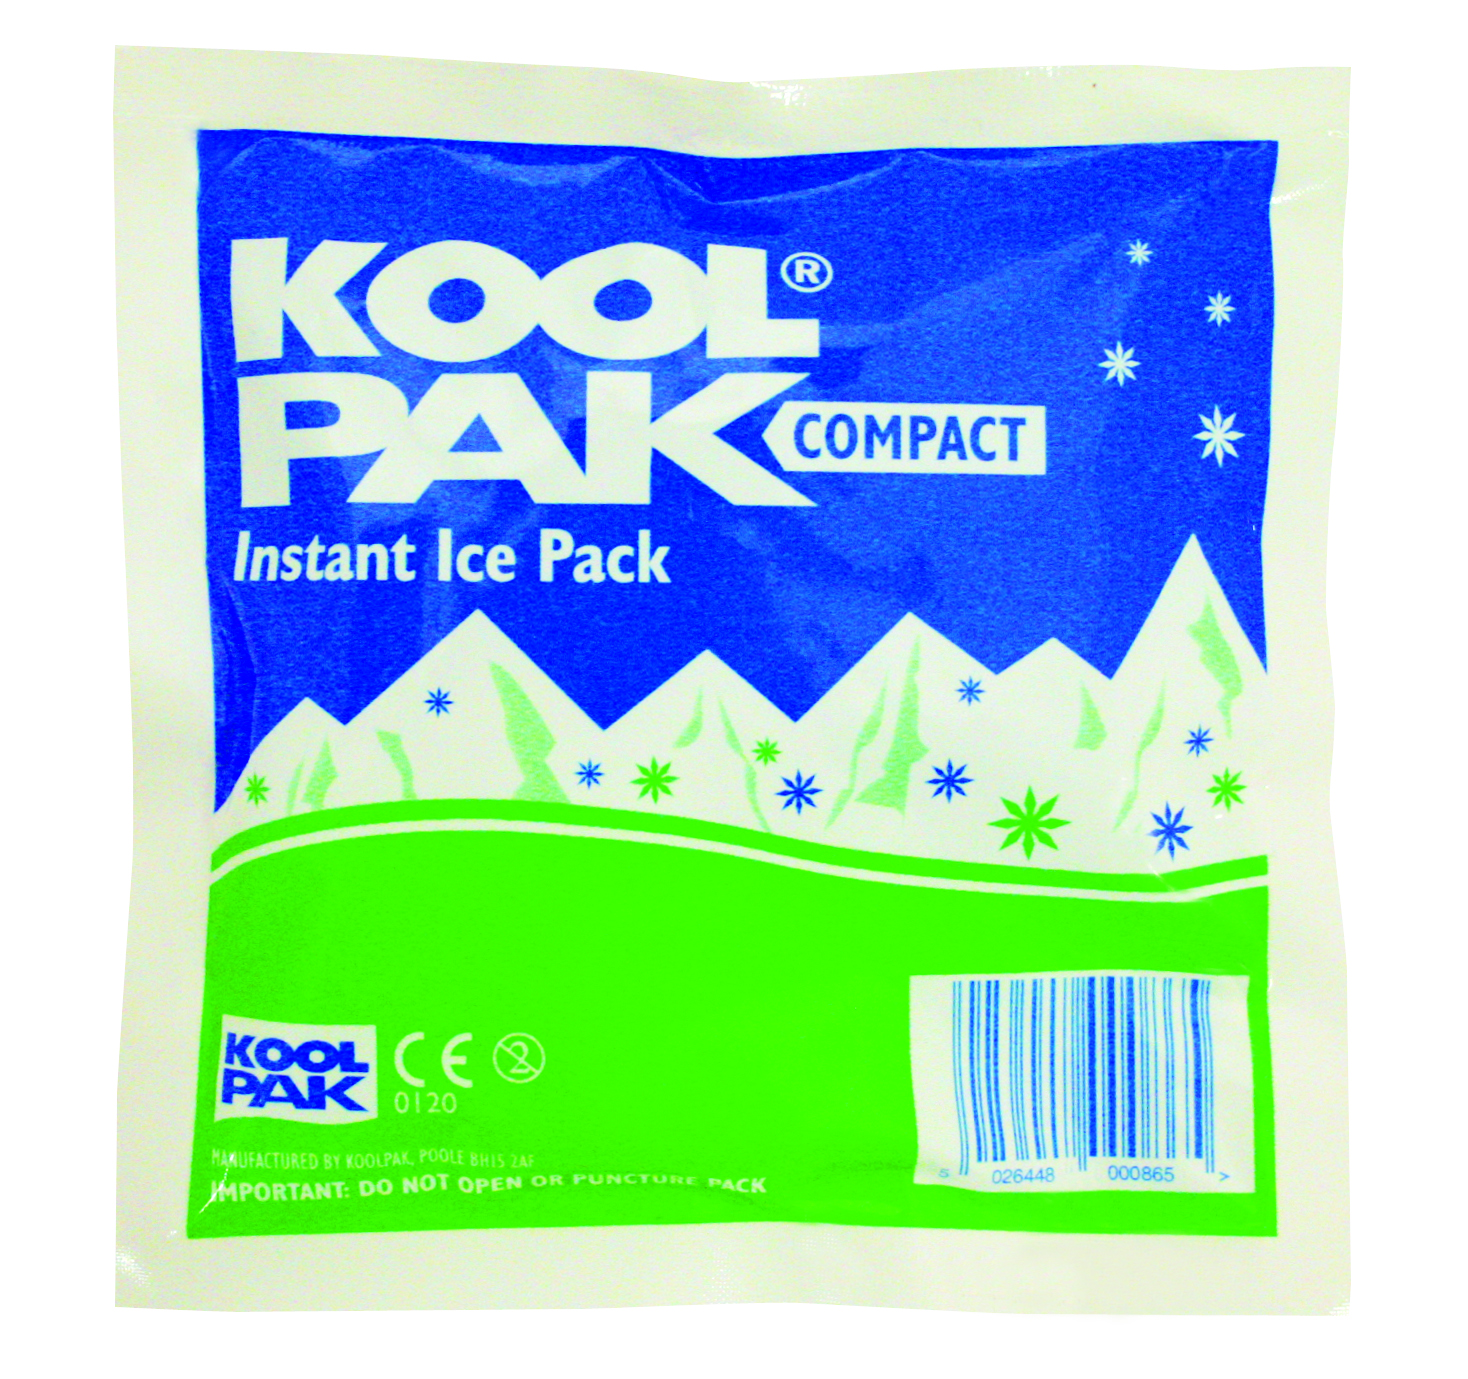 636917164548775087_koolpak-compact-instant-ice-pack.jpg